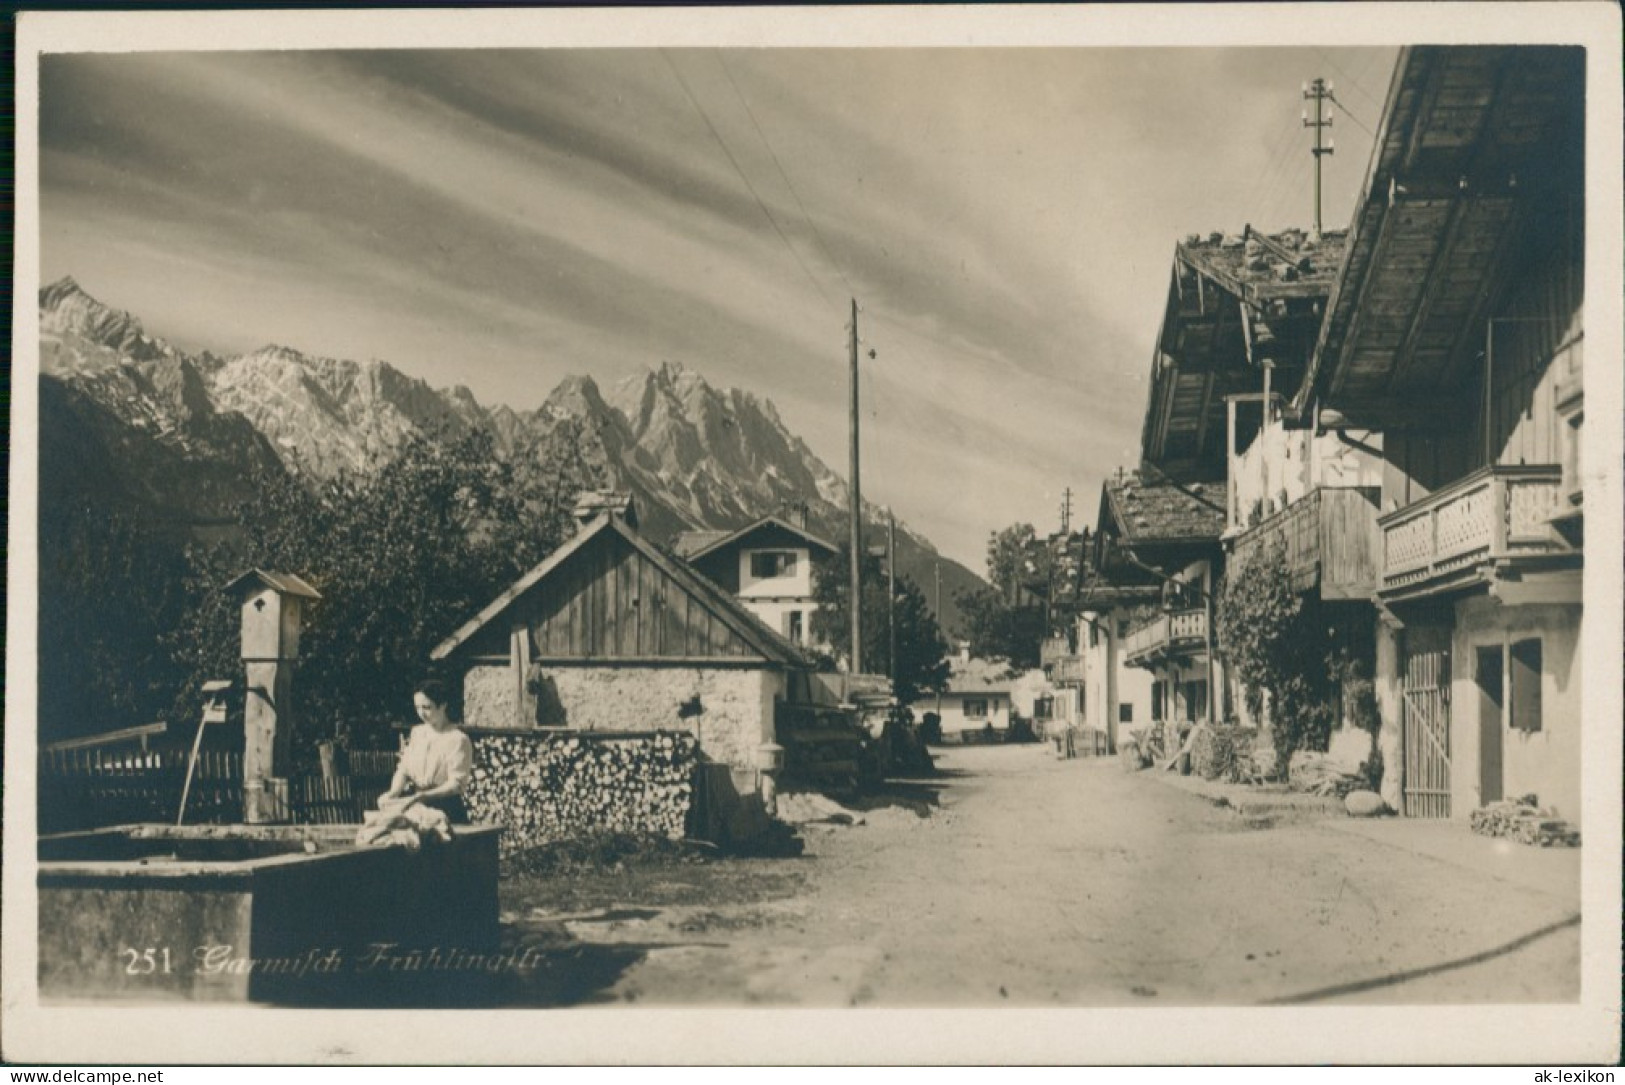 Ansichtskarte Garmisch-Partenkirchen Frühlingstrasse, Brunnen, Frau 1928 - Garmisch-Partenkirchen